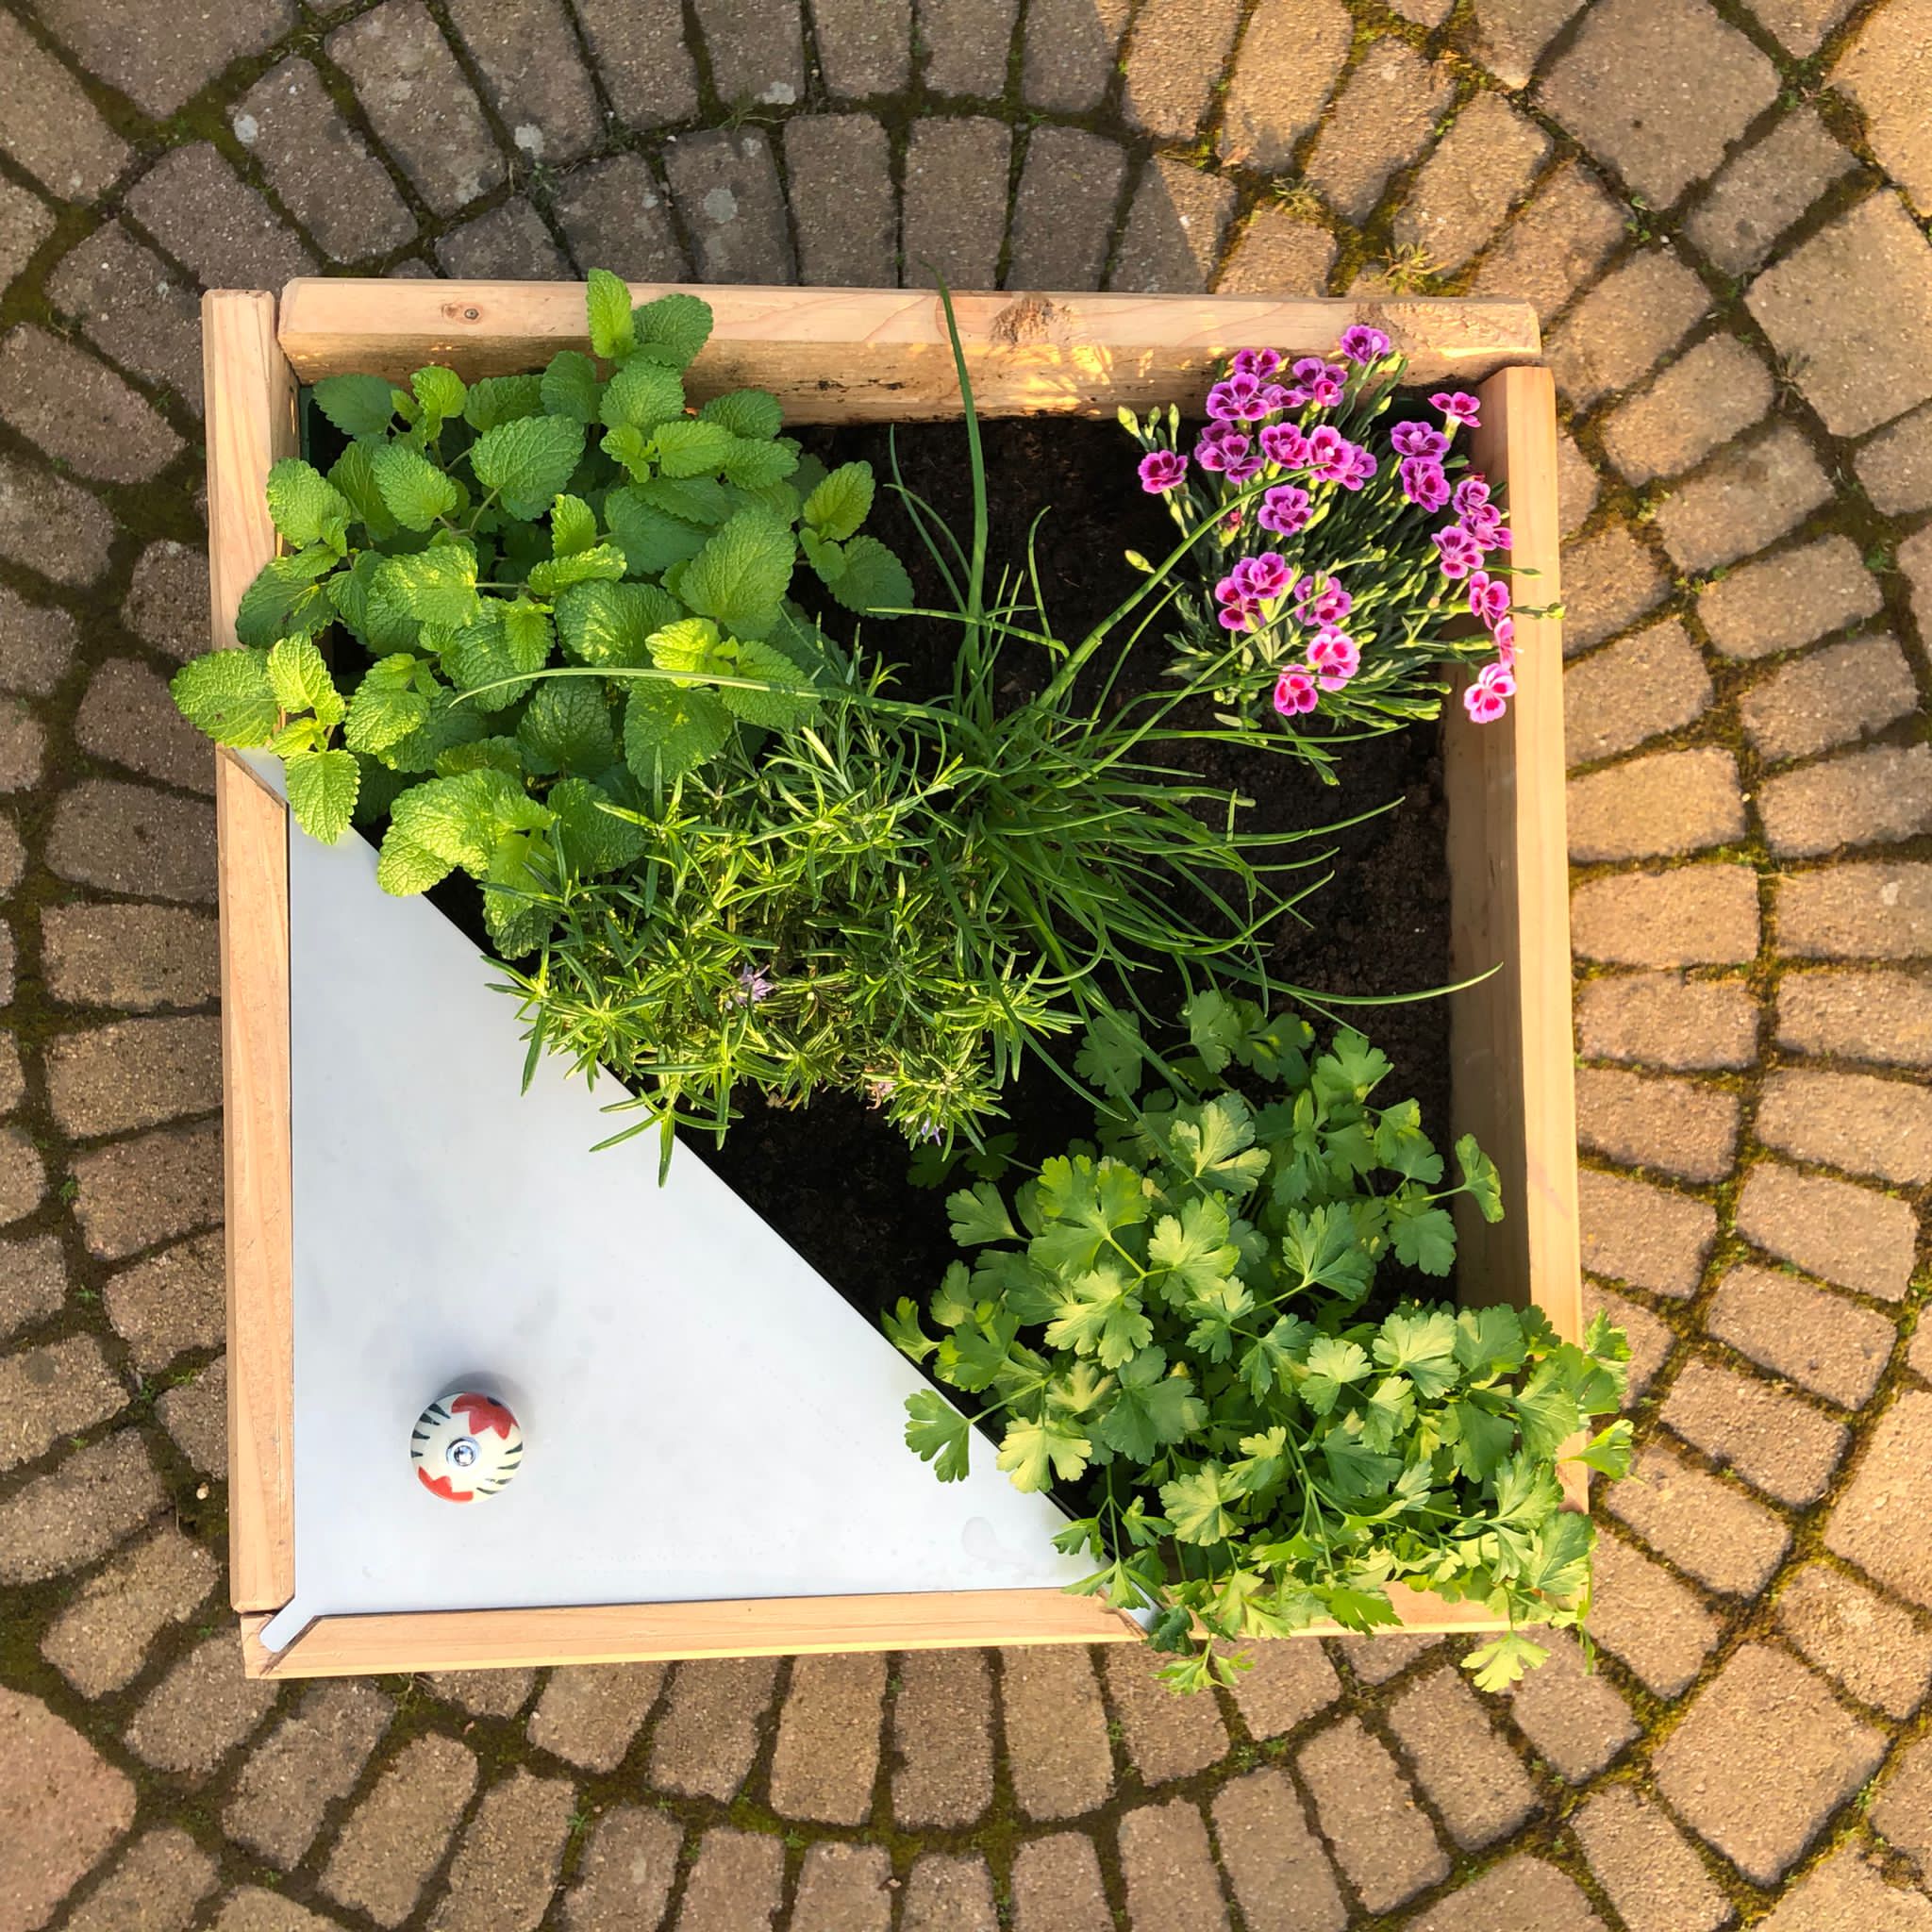 Agrotonome : ce potager composteur (terrasse et jardin) permet de cultiver  et de nourrir les plantes en même temps - NeozOne